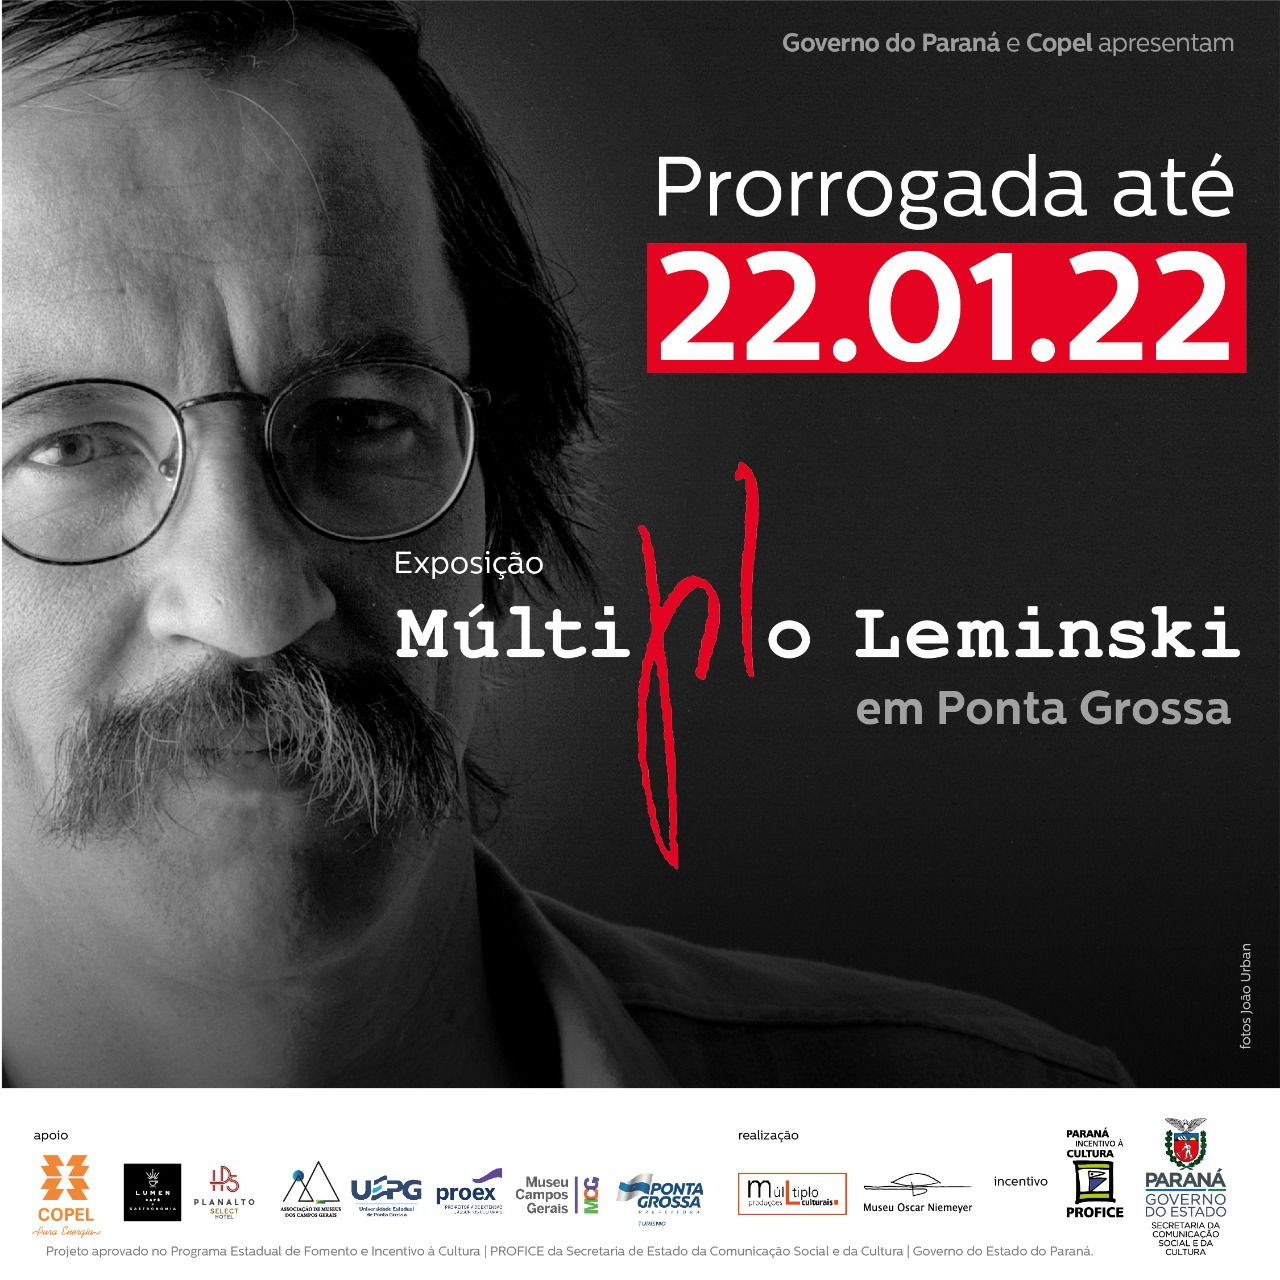 Museu Campos Gerais prorroga exposição Múltiplo Leminski até 22 de janeiro